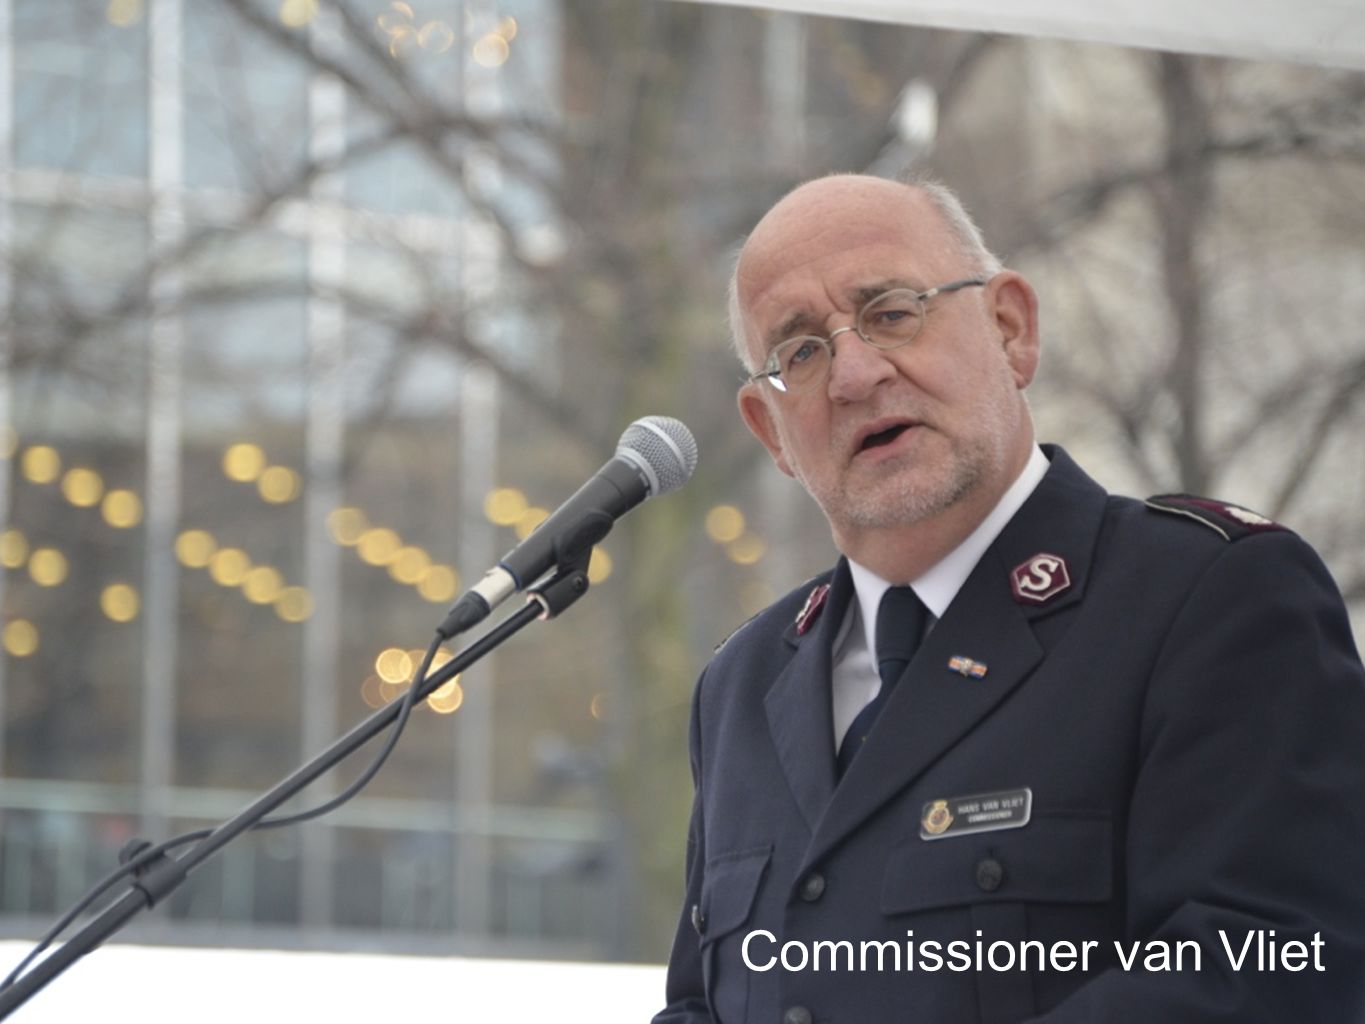 Commissioner van Vliet